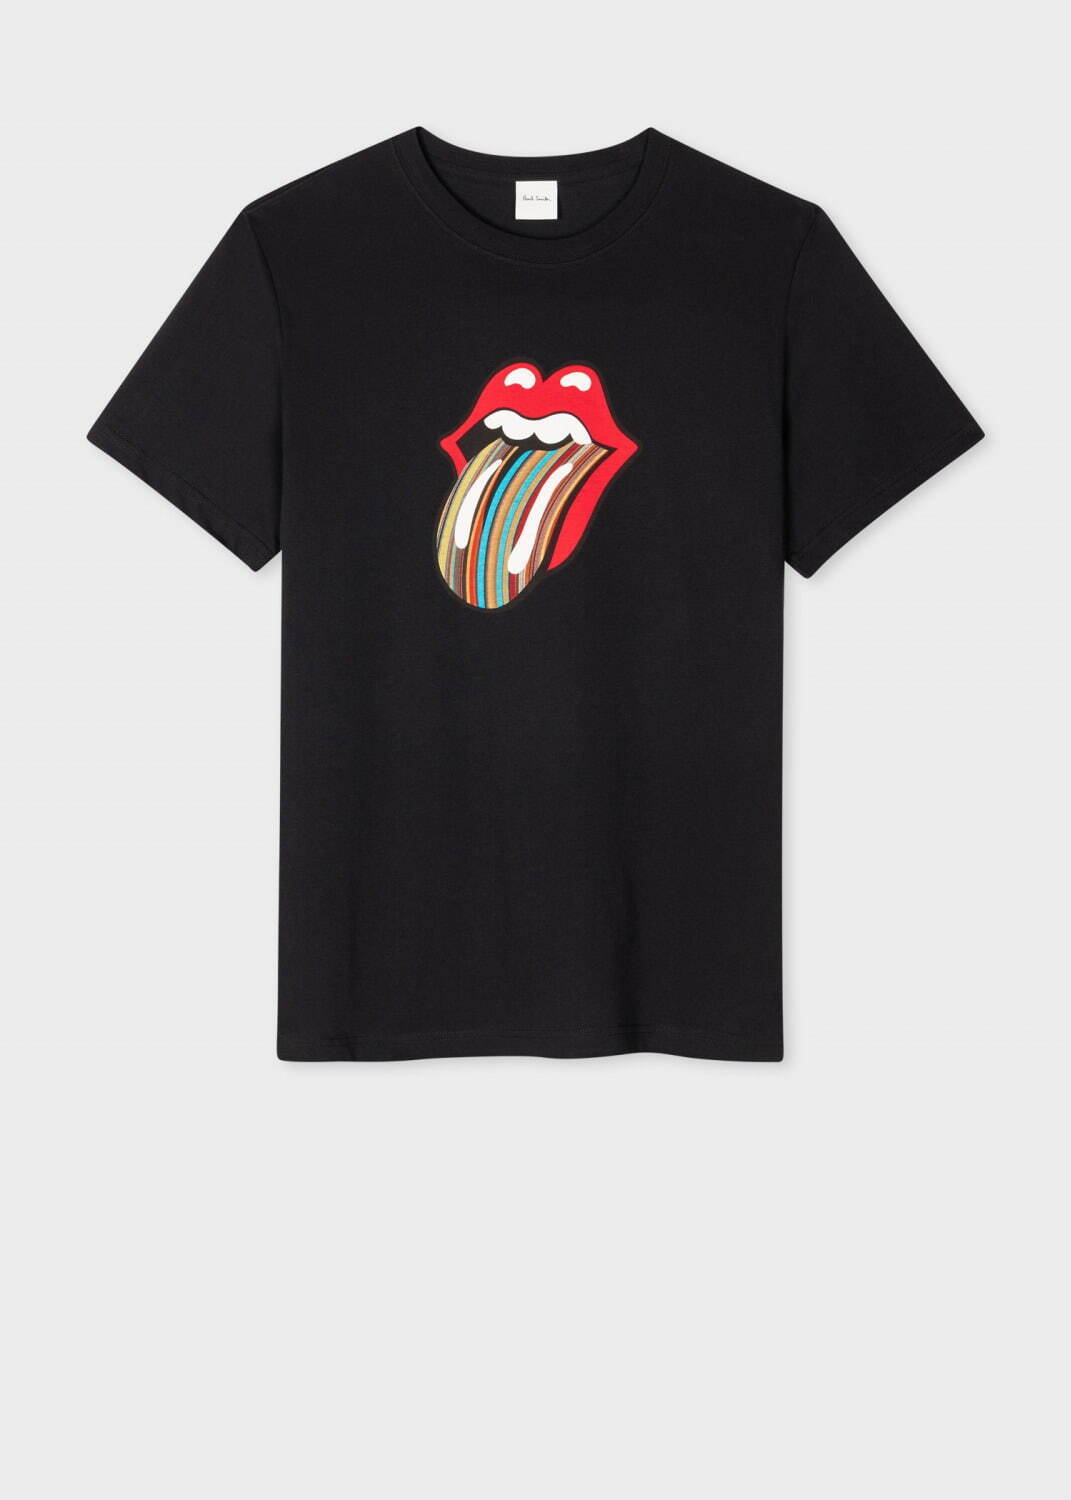 シグネチャーストライプ Tongue Logo Tシャツ 17,600円